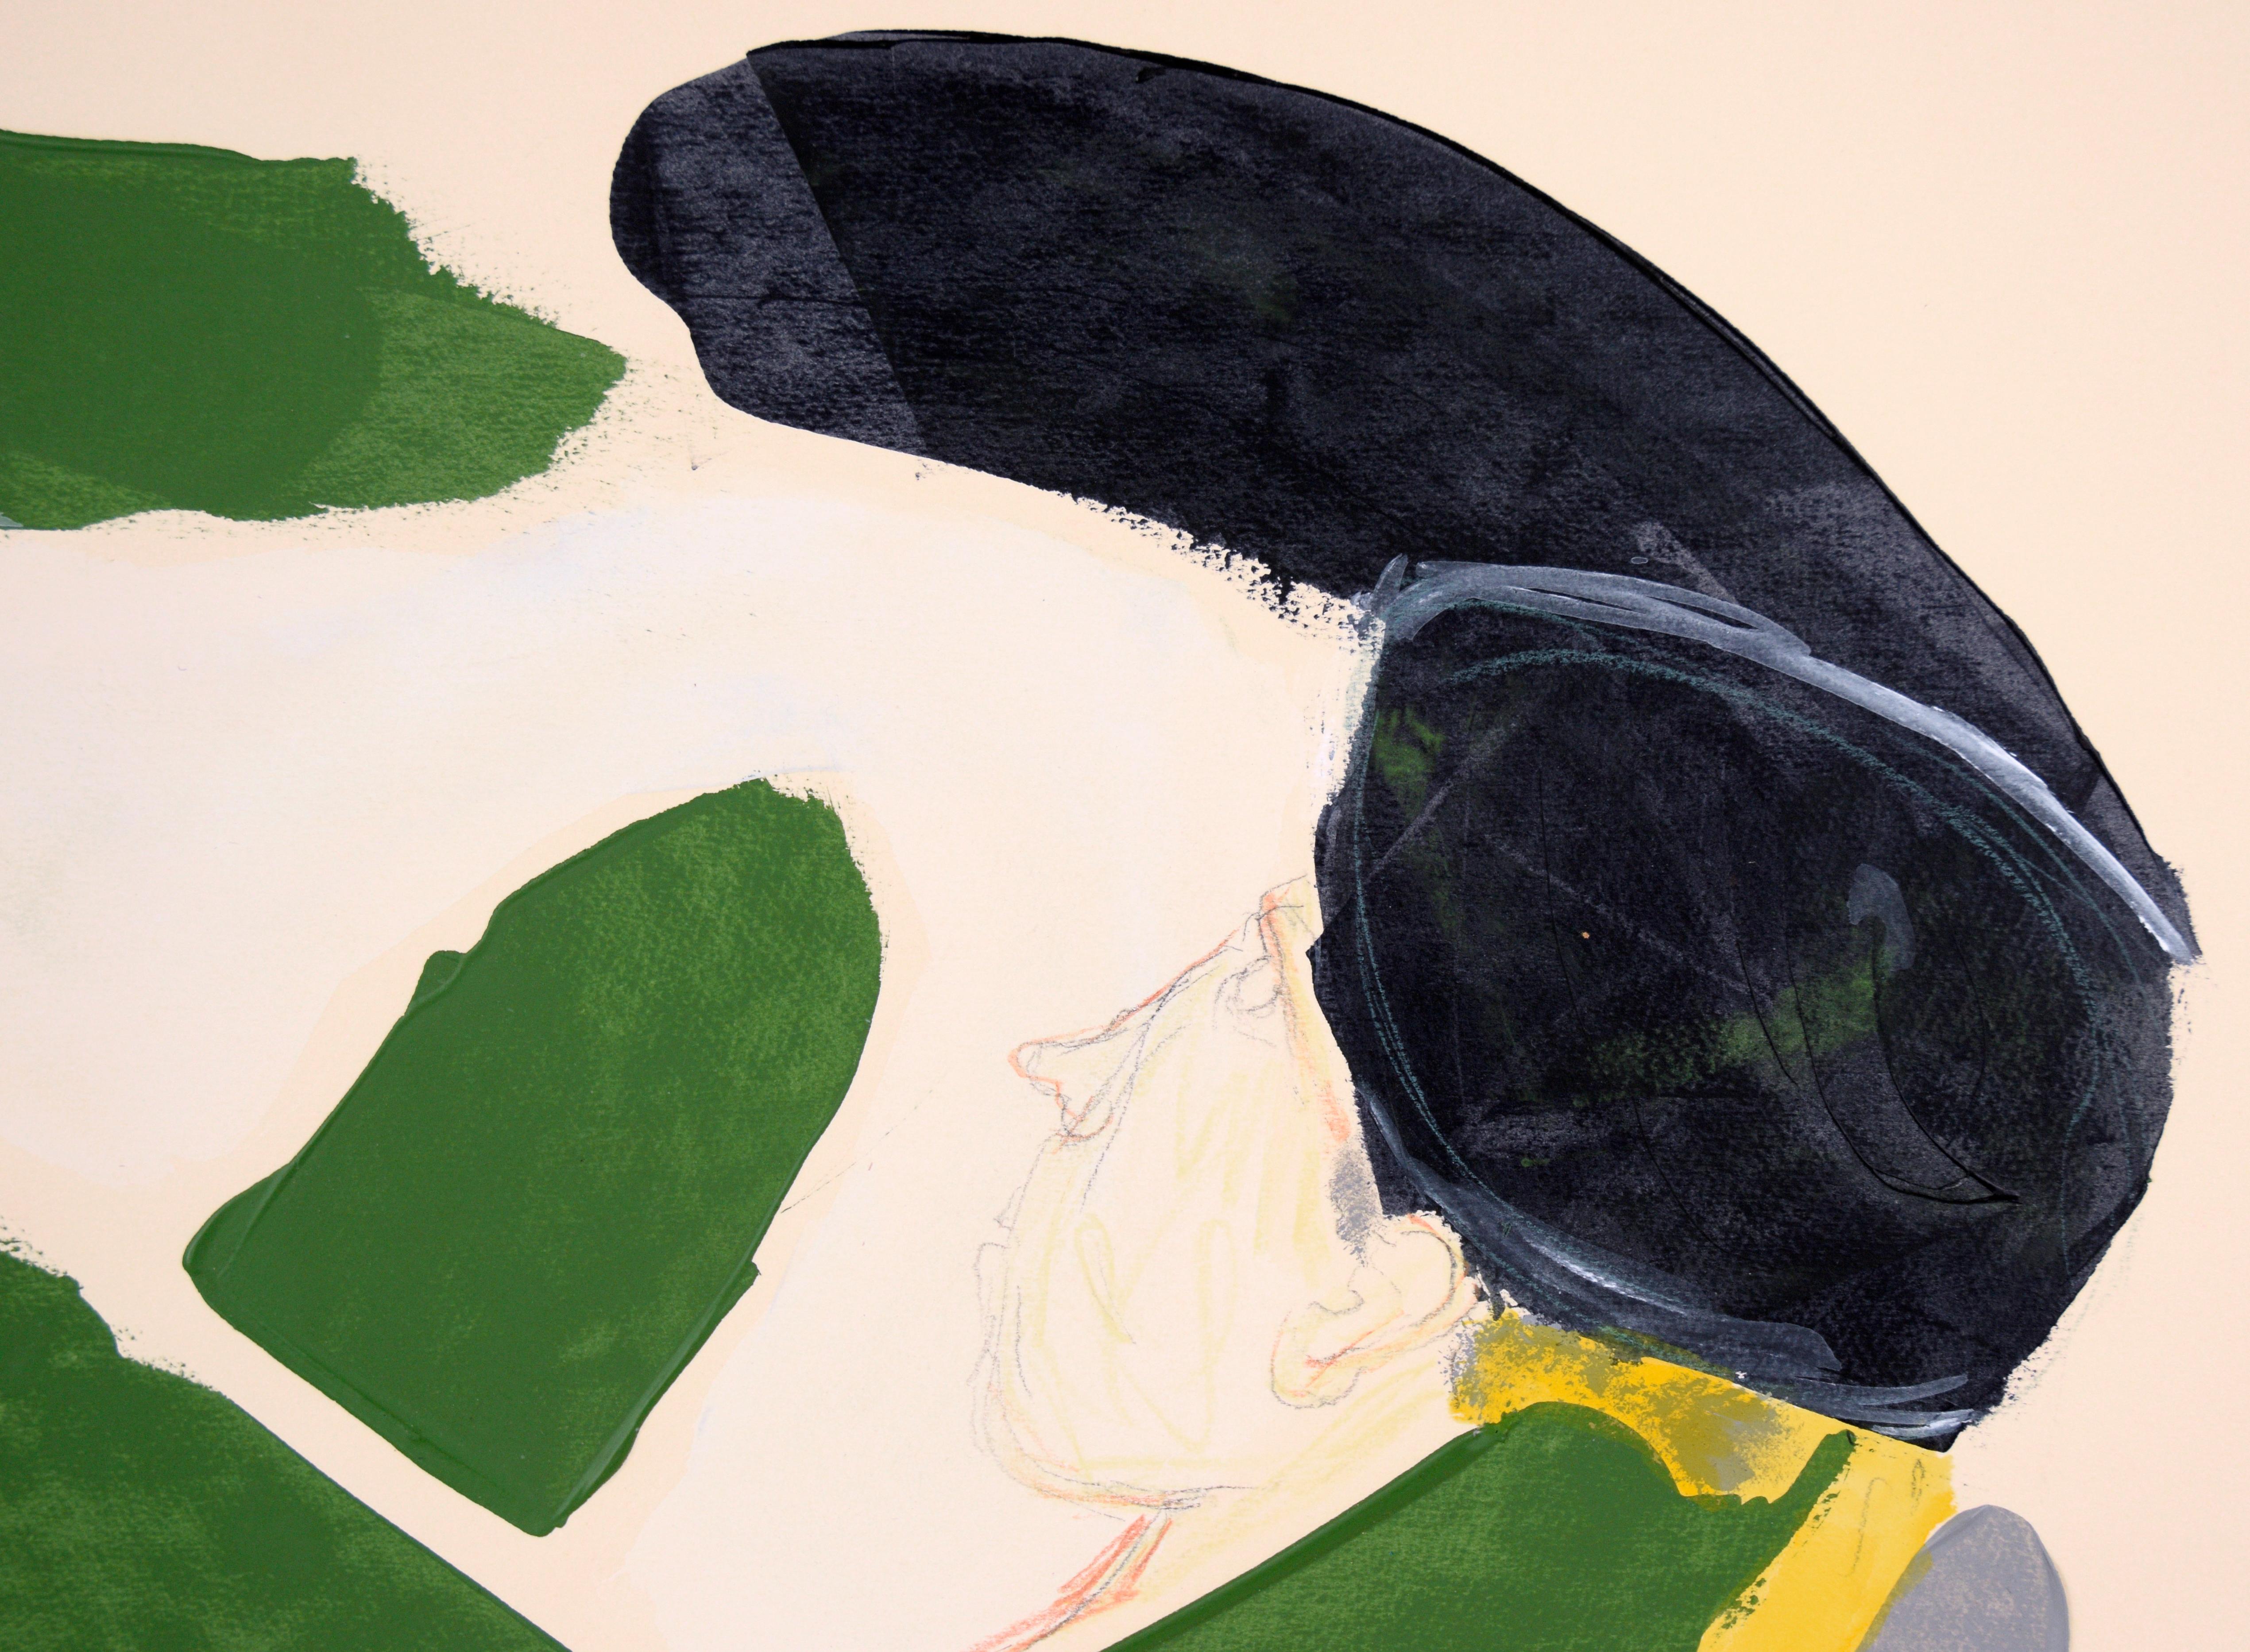 « Relaxing at Camarillo » (L'expressionnisme abstrait au Camarillo)

Un homme coiffé d'un chapeau noir et d'une forme verte imitant le symbole de l'infini, rehaussé de jaune canari et de gris vifs, par l'artiste californien Ricardo de Silva